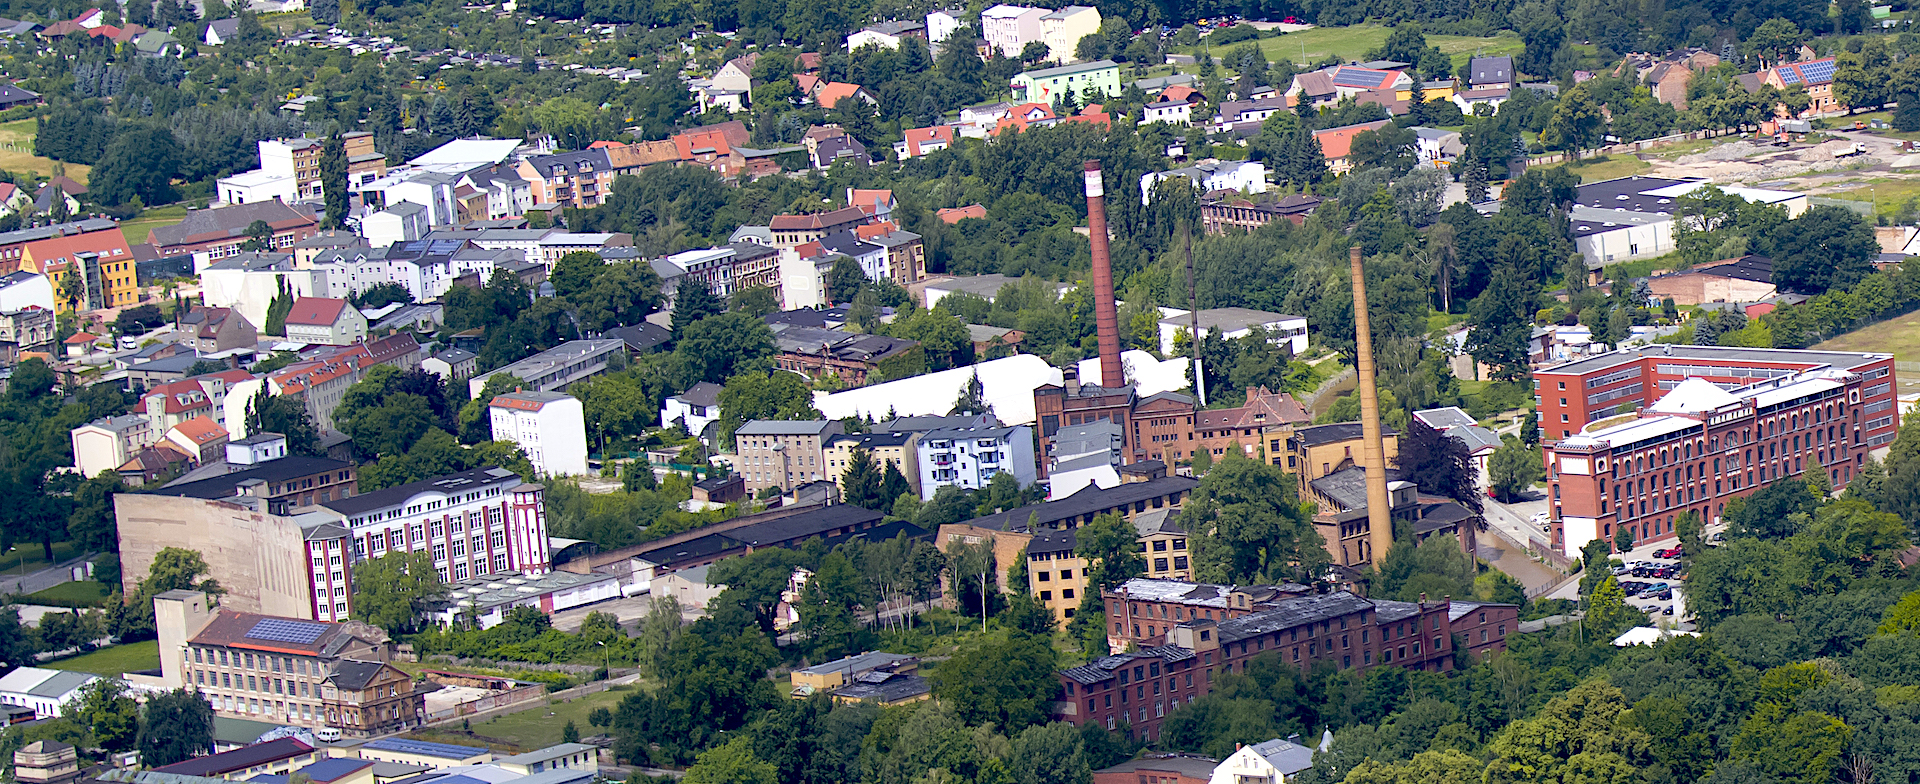 Forst/Lausitz - Luftbild aus 2012